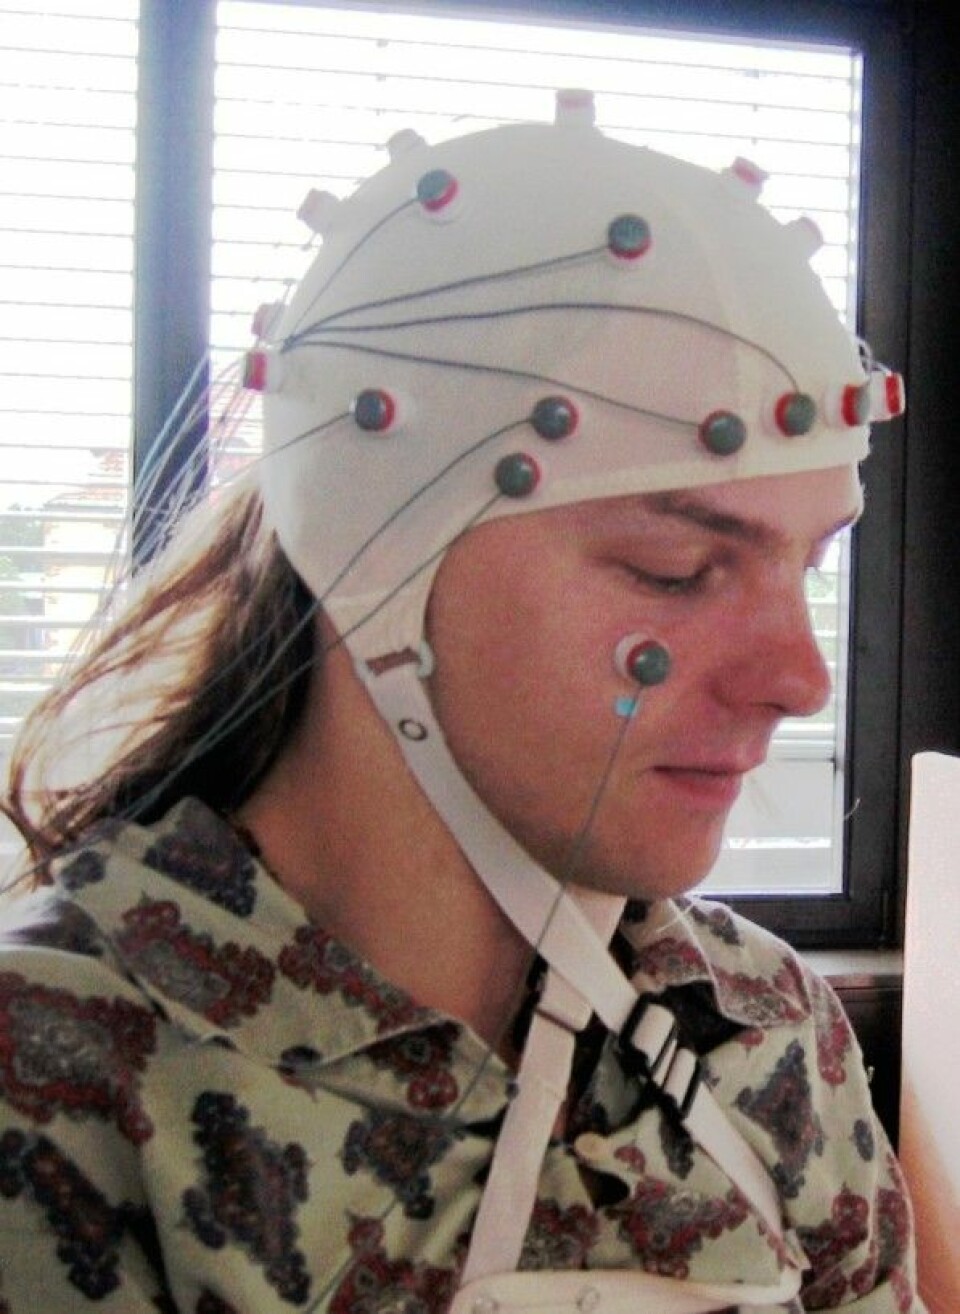 EEG-skan av Breiviks hjerne ville kunne hjulpet diagnosen til å bli mer presis, og mindre forvirrende for retten, mener Malt. (Foto: Aschoeke/Wikimedia Creative Commons)